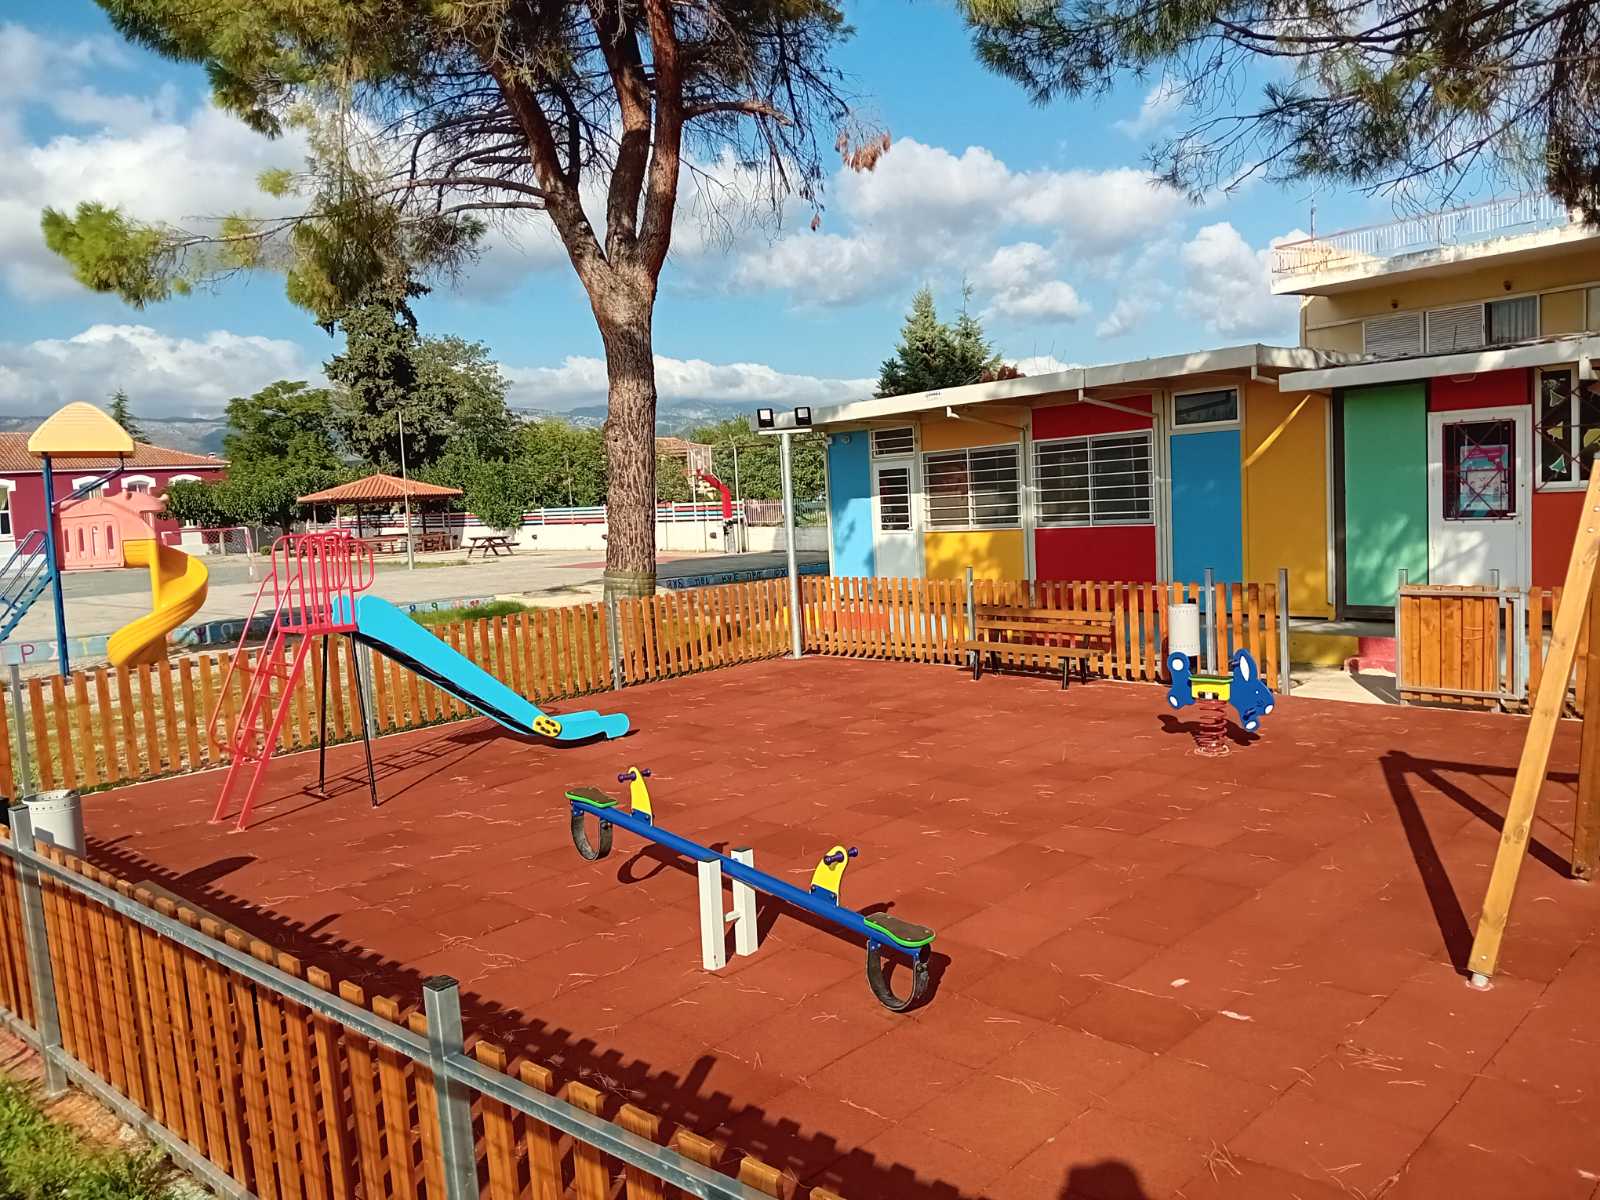 Εύβοια: Σε ποιο σχολείο παραδόθηκε νέα παιδική χαρά